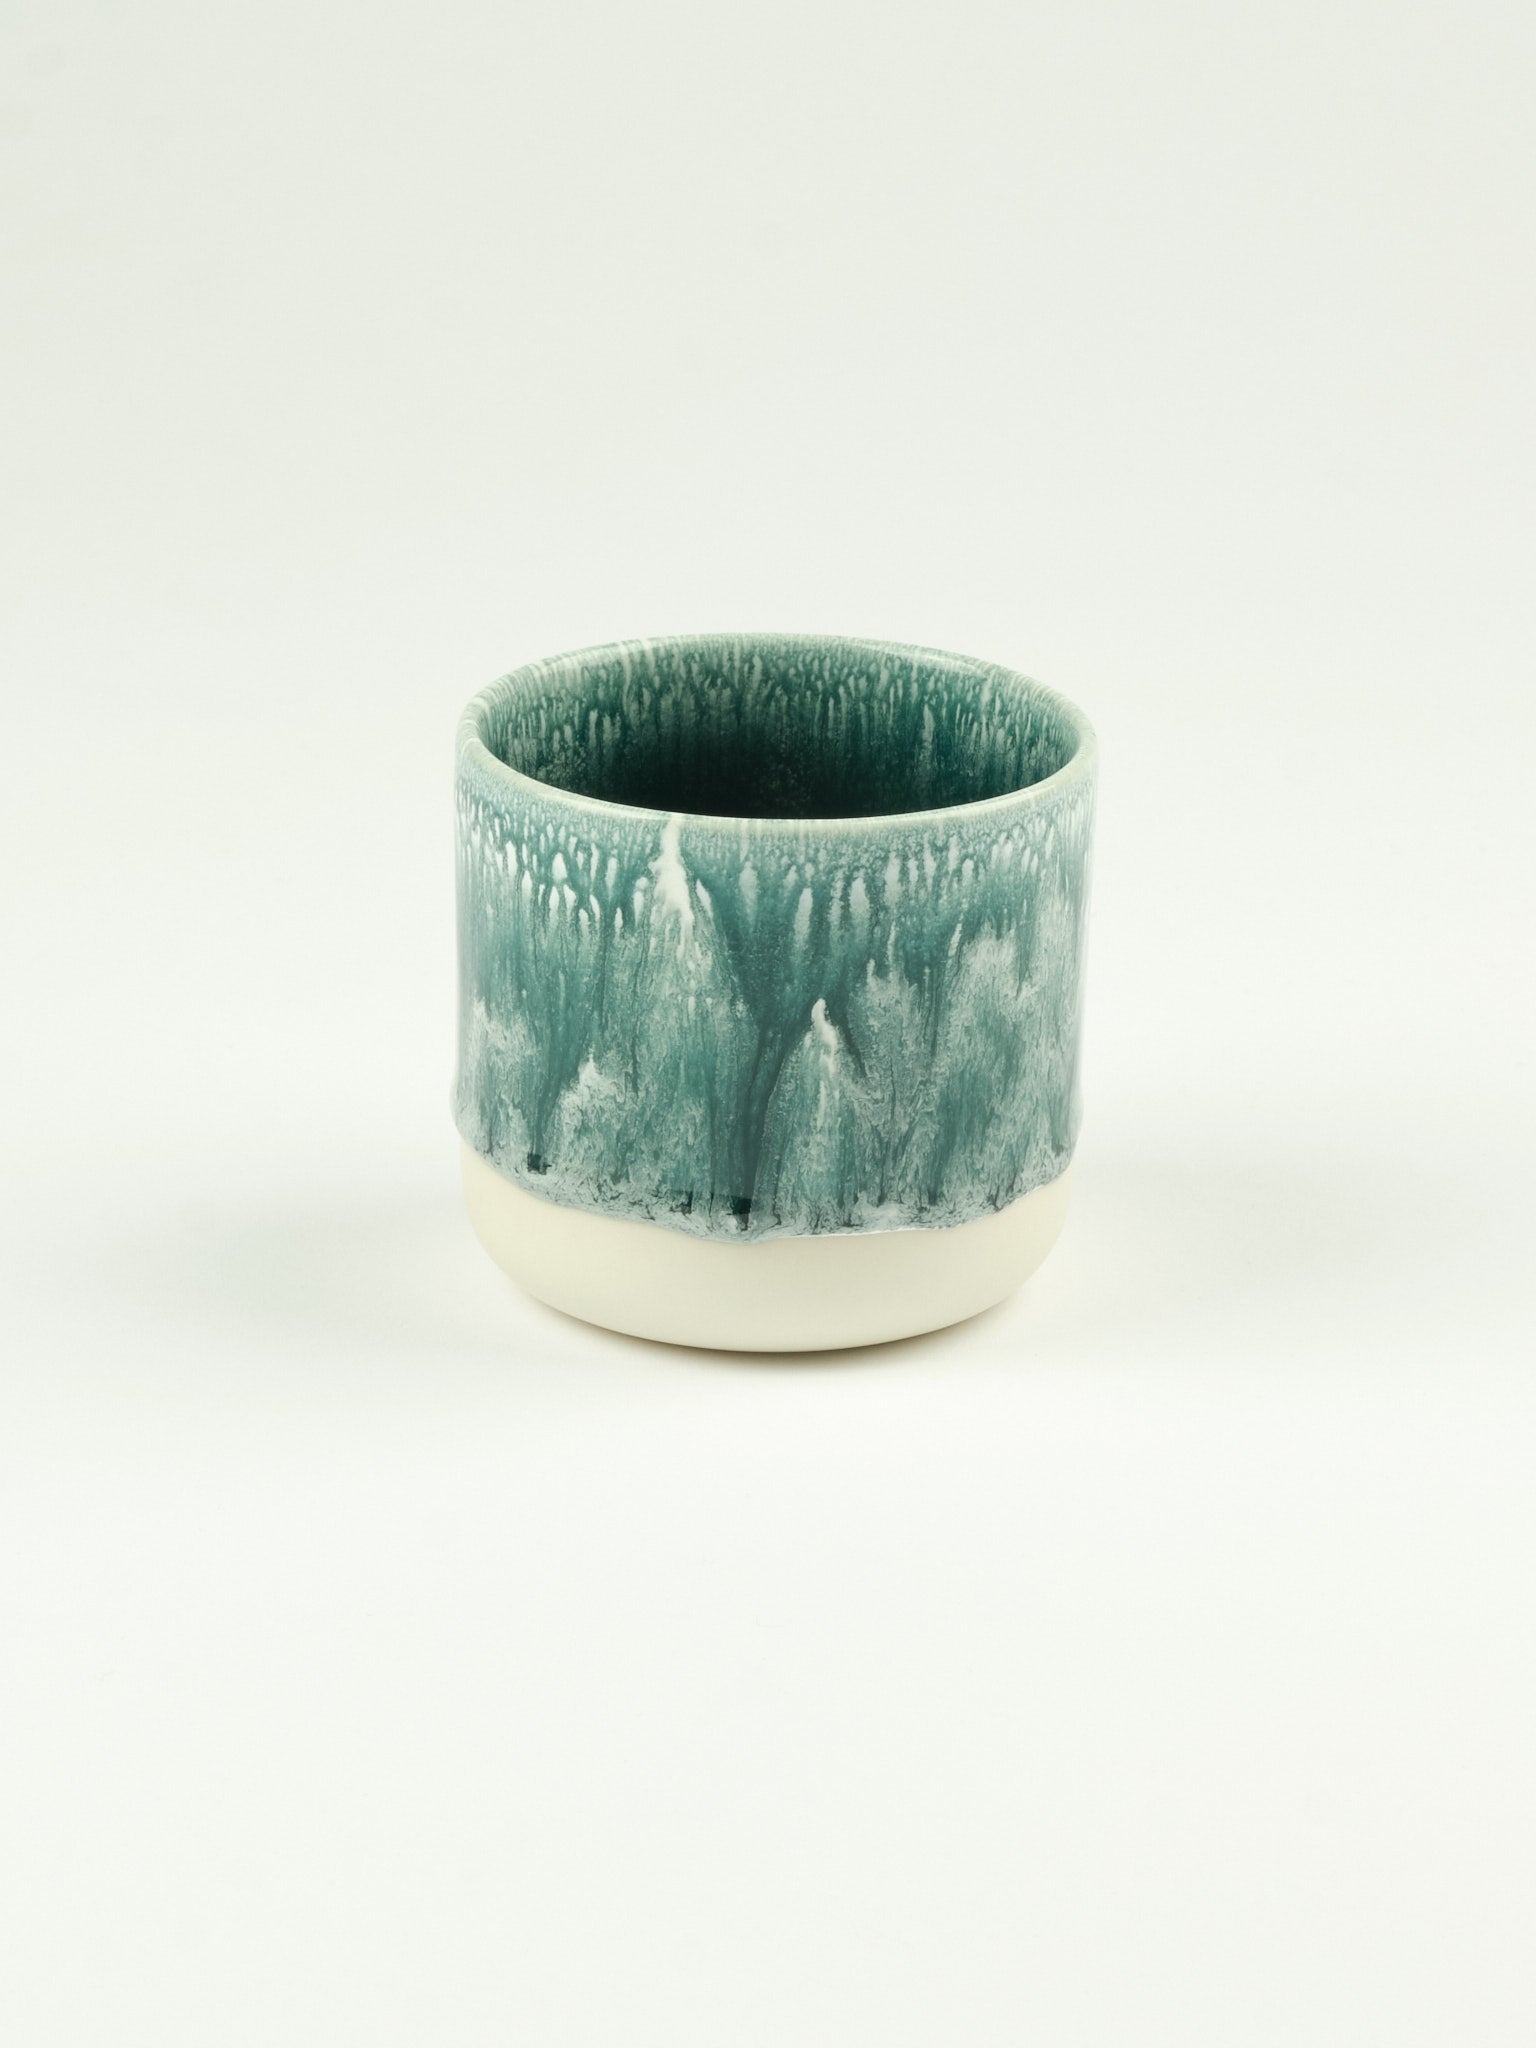 "Quench Cup", by Studio Arhoj